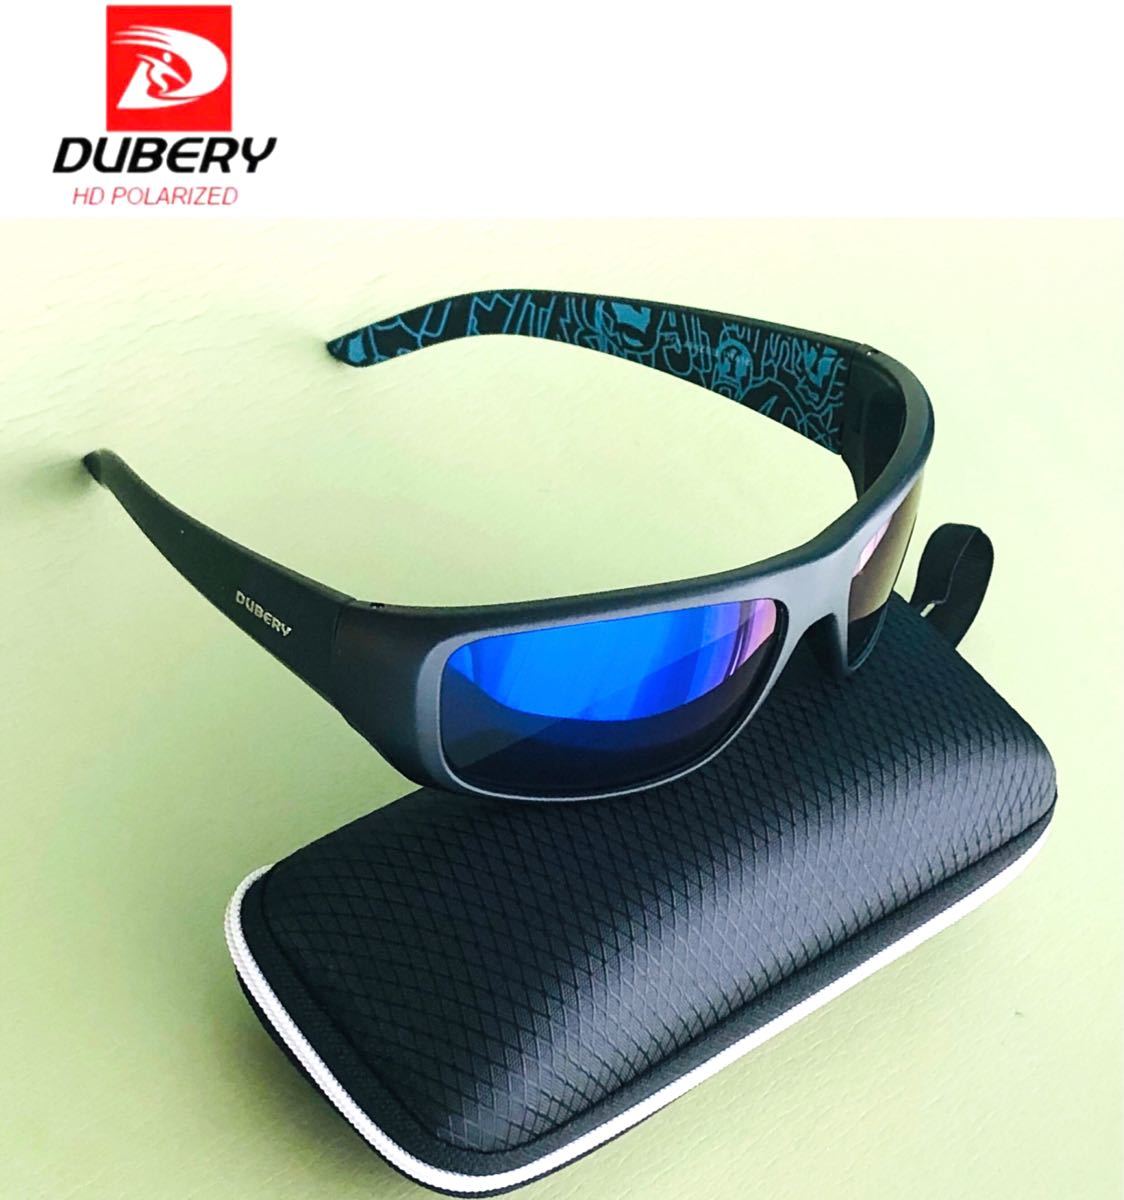 DUBERY サングラス 偏光グラス UV400 軽量 車  釣り アウトドア スポーツサングラス 紫外線カット